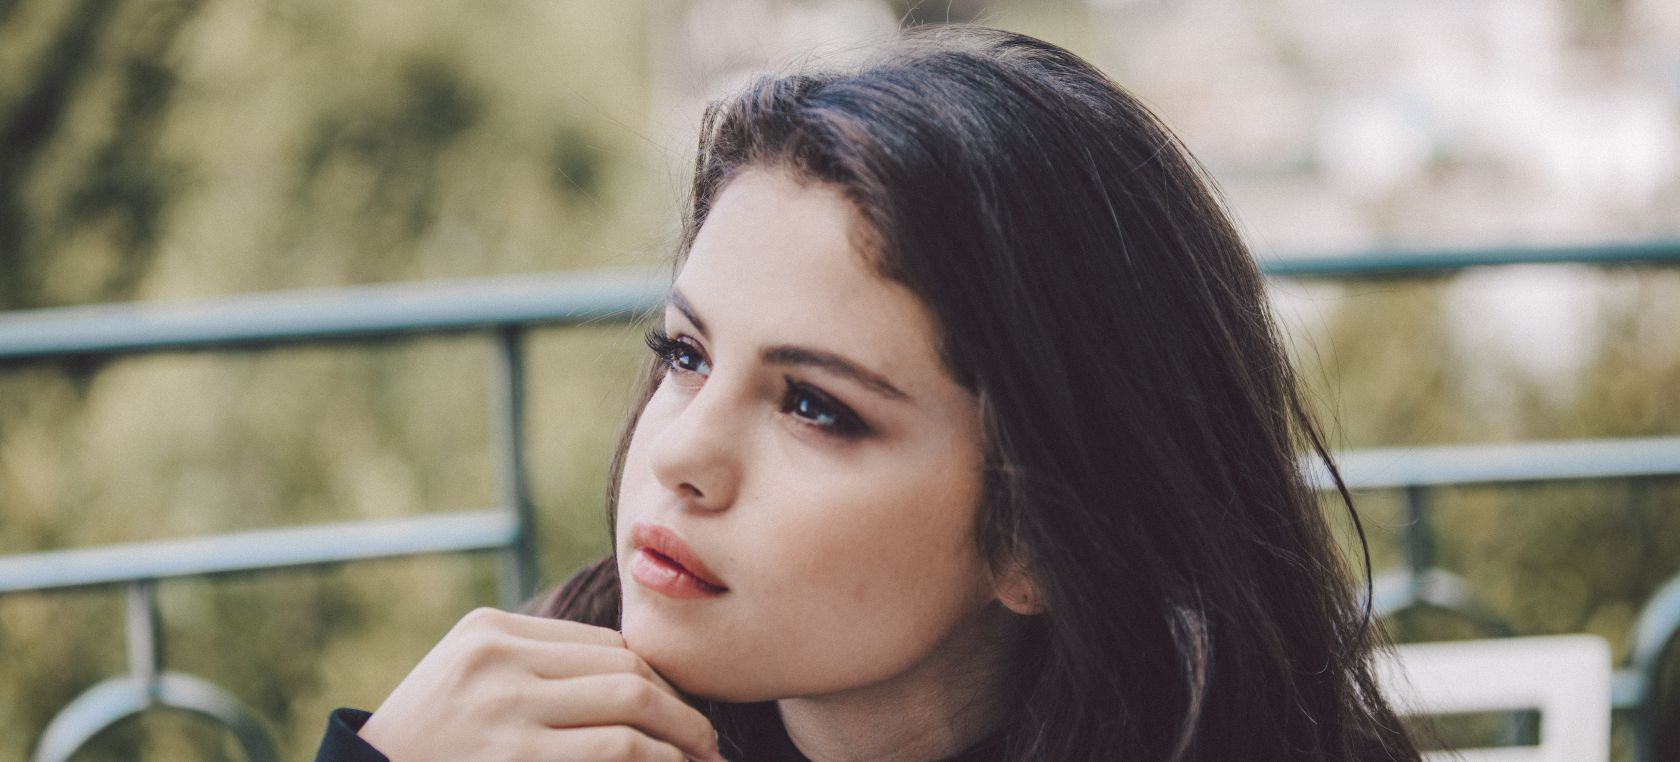 Selena Gomez, Time, Instagram: Selena Gomez es portada de la revista Time |  Actualidad | LOS40 México